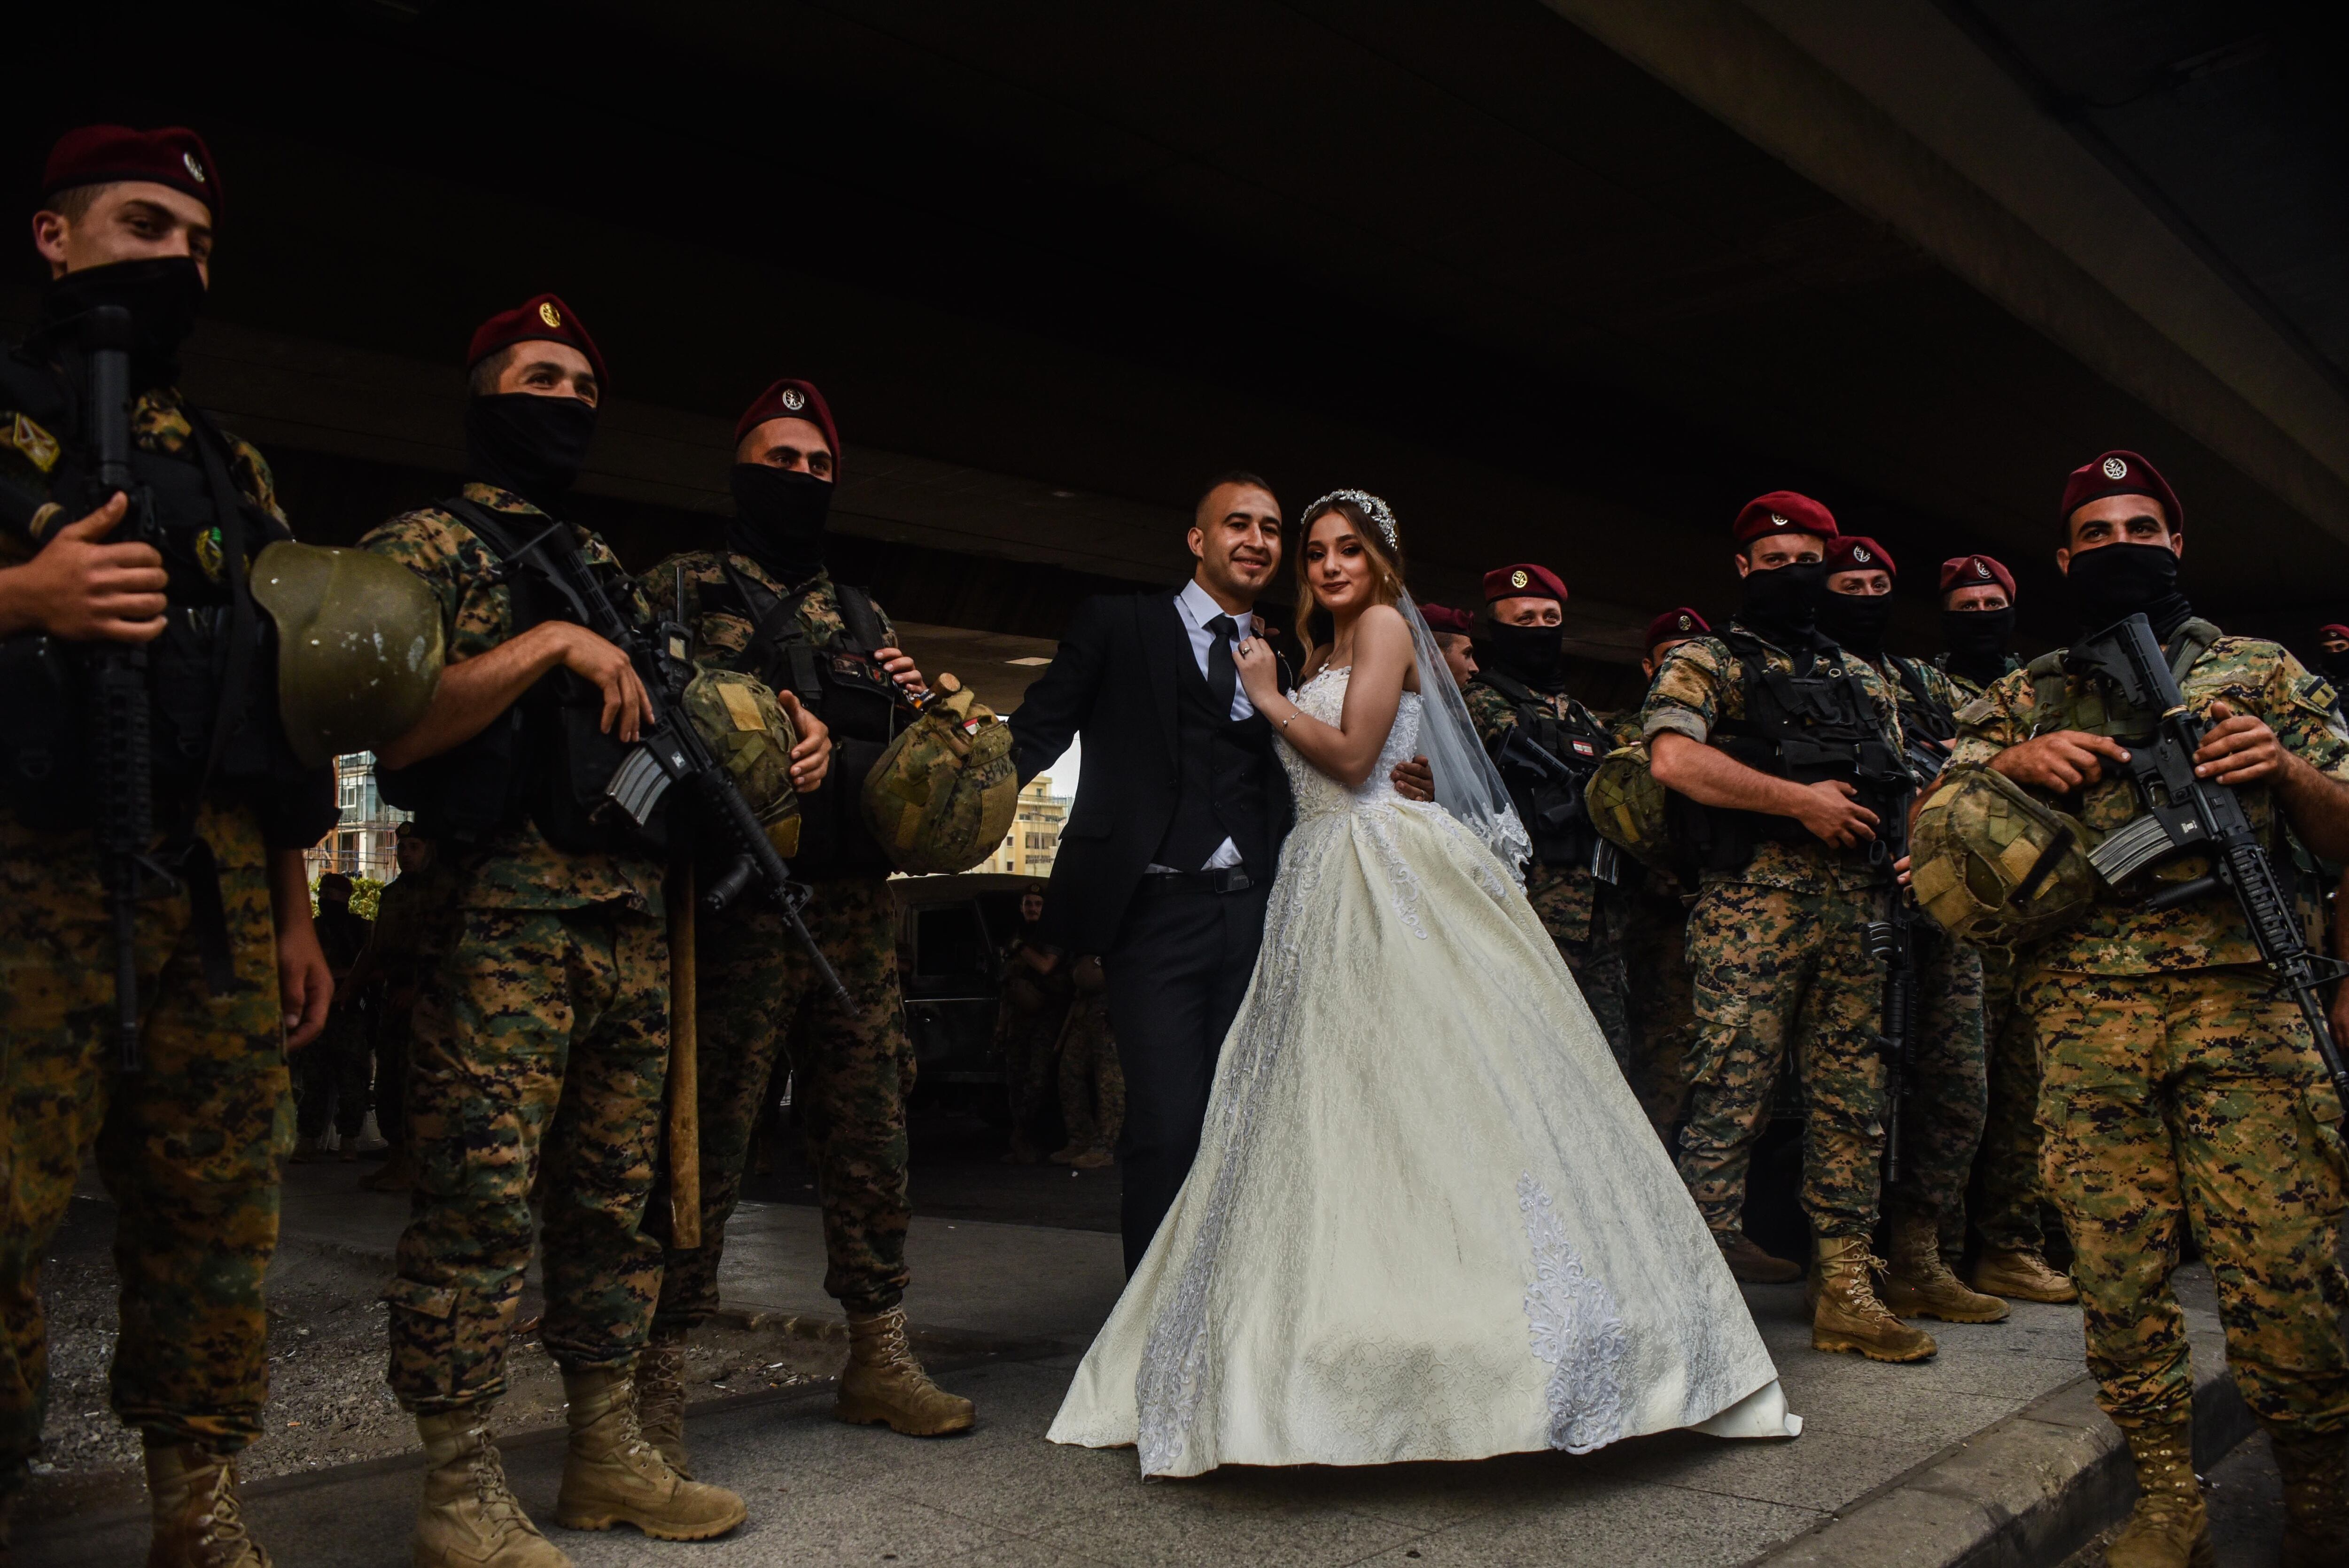 Una pareja de recién casados posa este sábado en Beirut entre manifestantes y fuerzas especiales del Ejército libanés desplegados para contener la batalla campal.